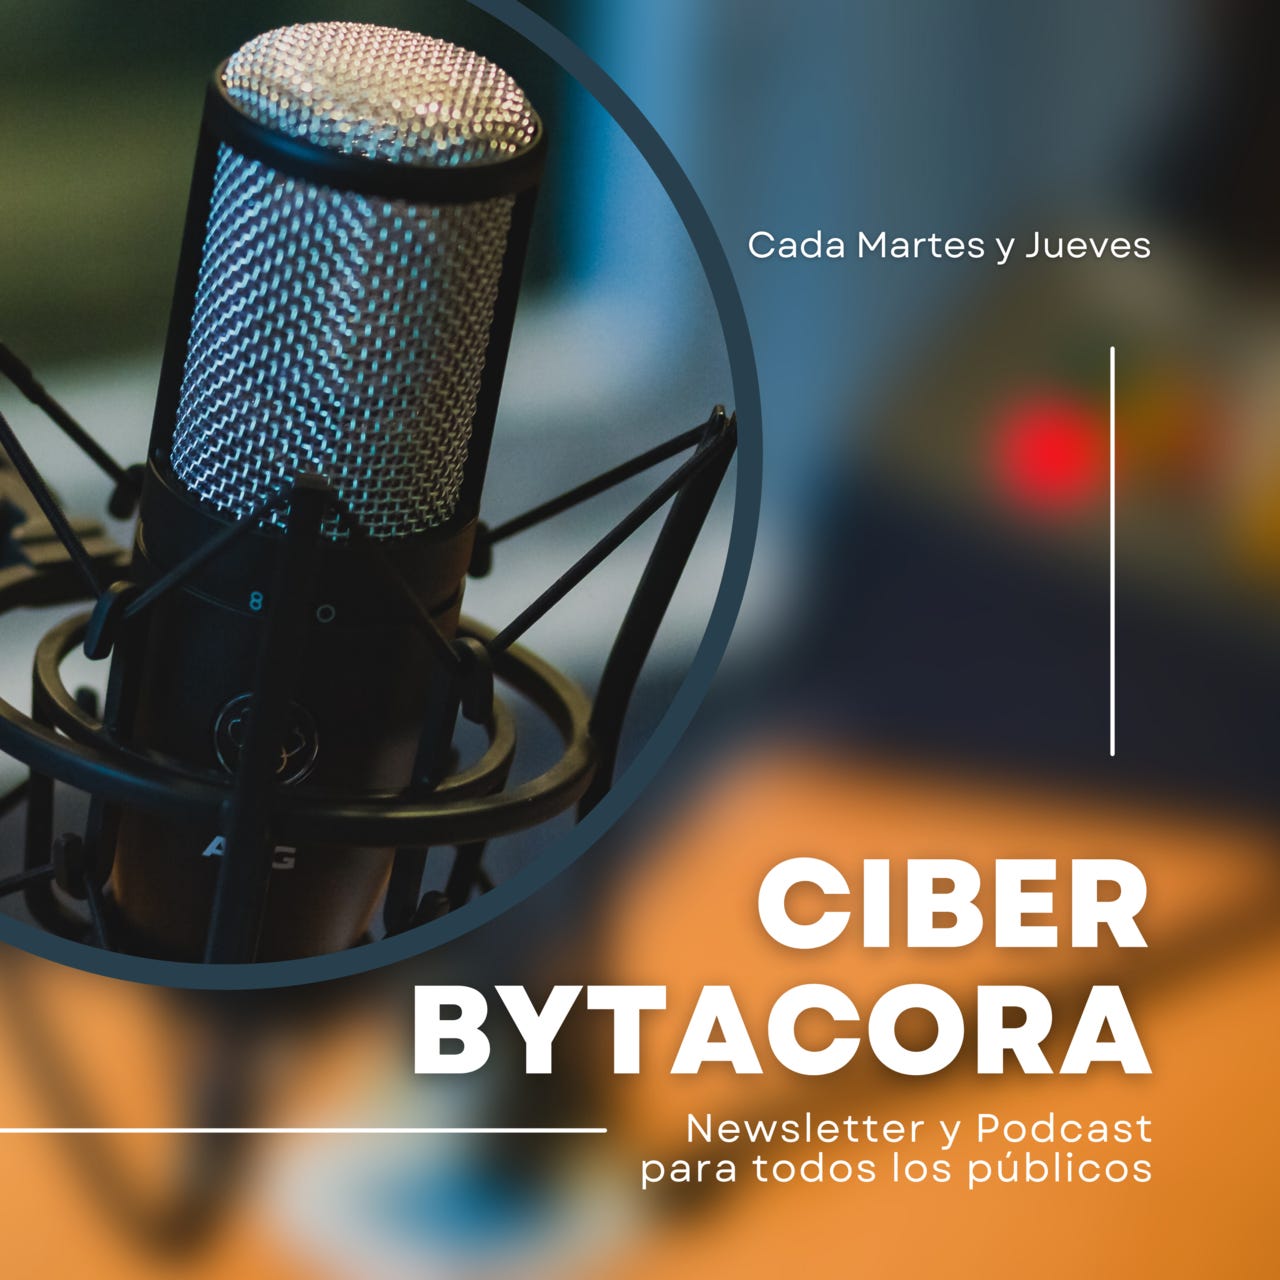 La Ciber Bytacora